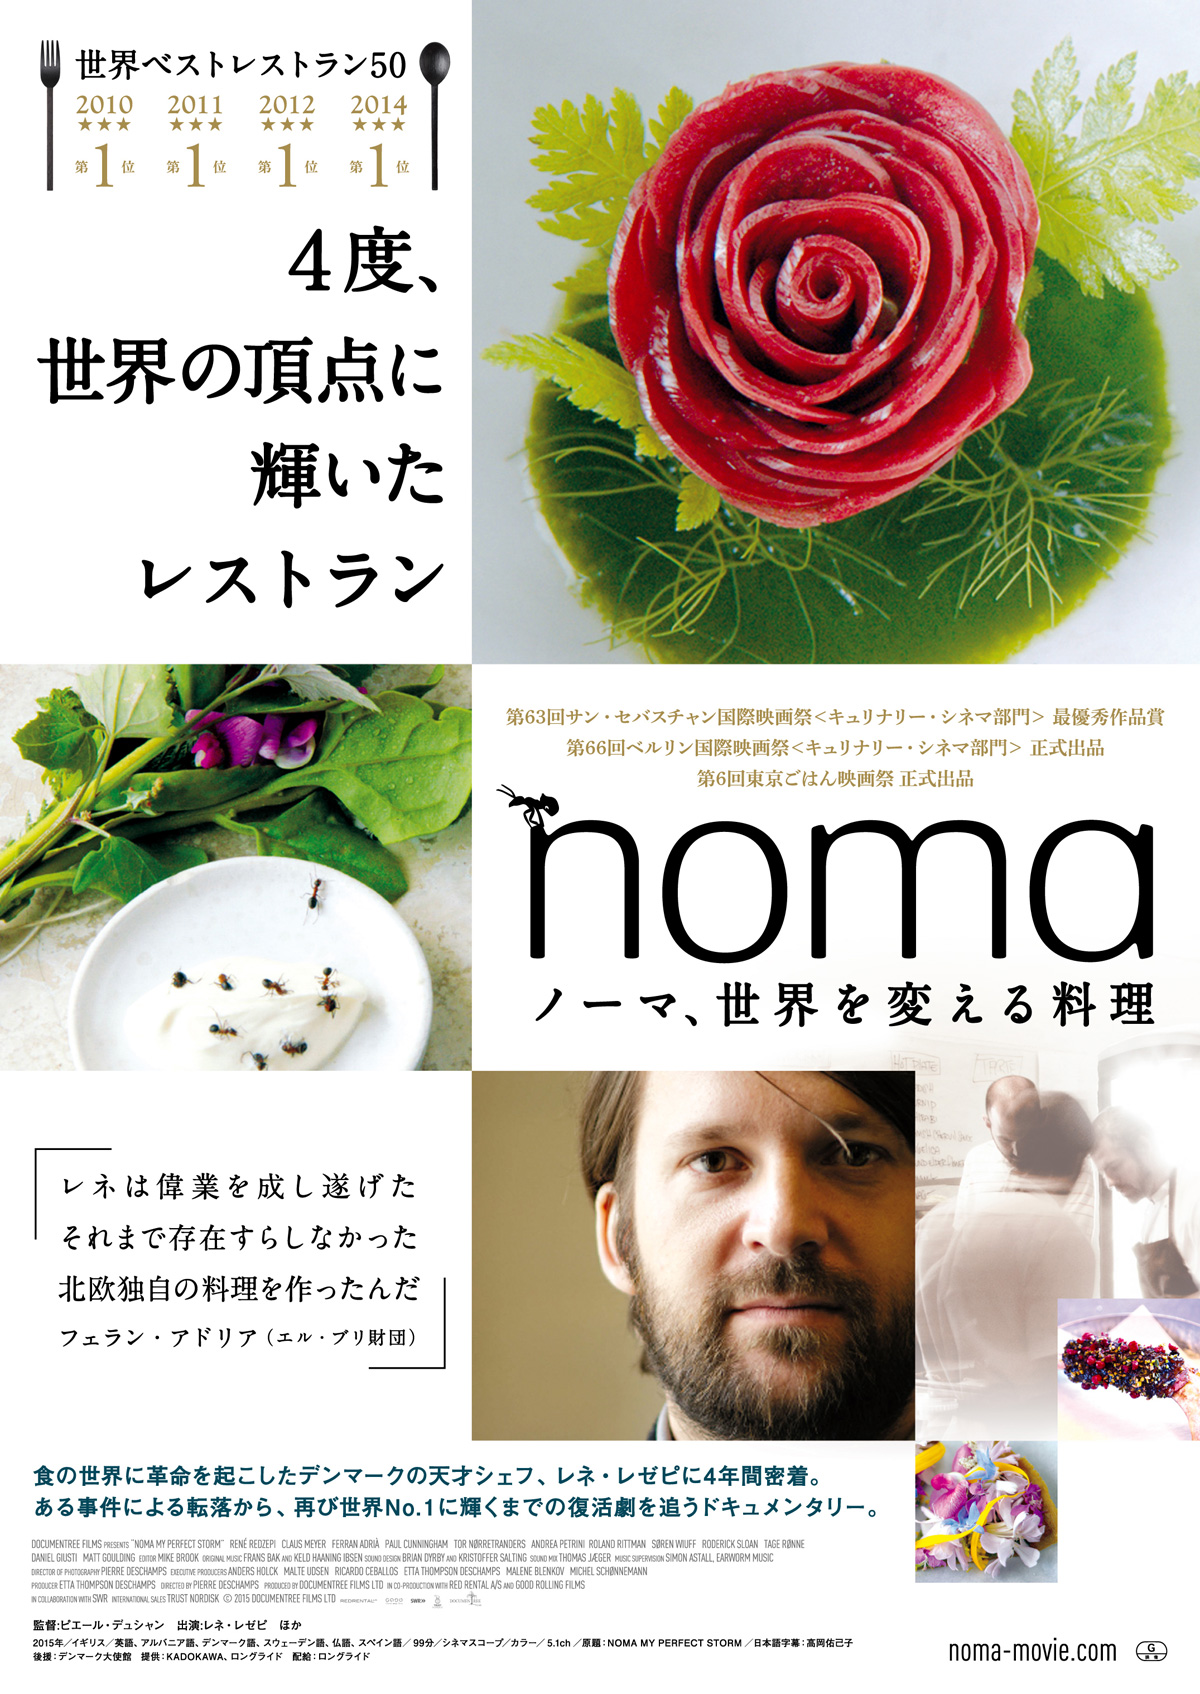 ノーマ、世界を変える料理 の映画情報 - Yahoo!映画